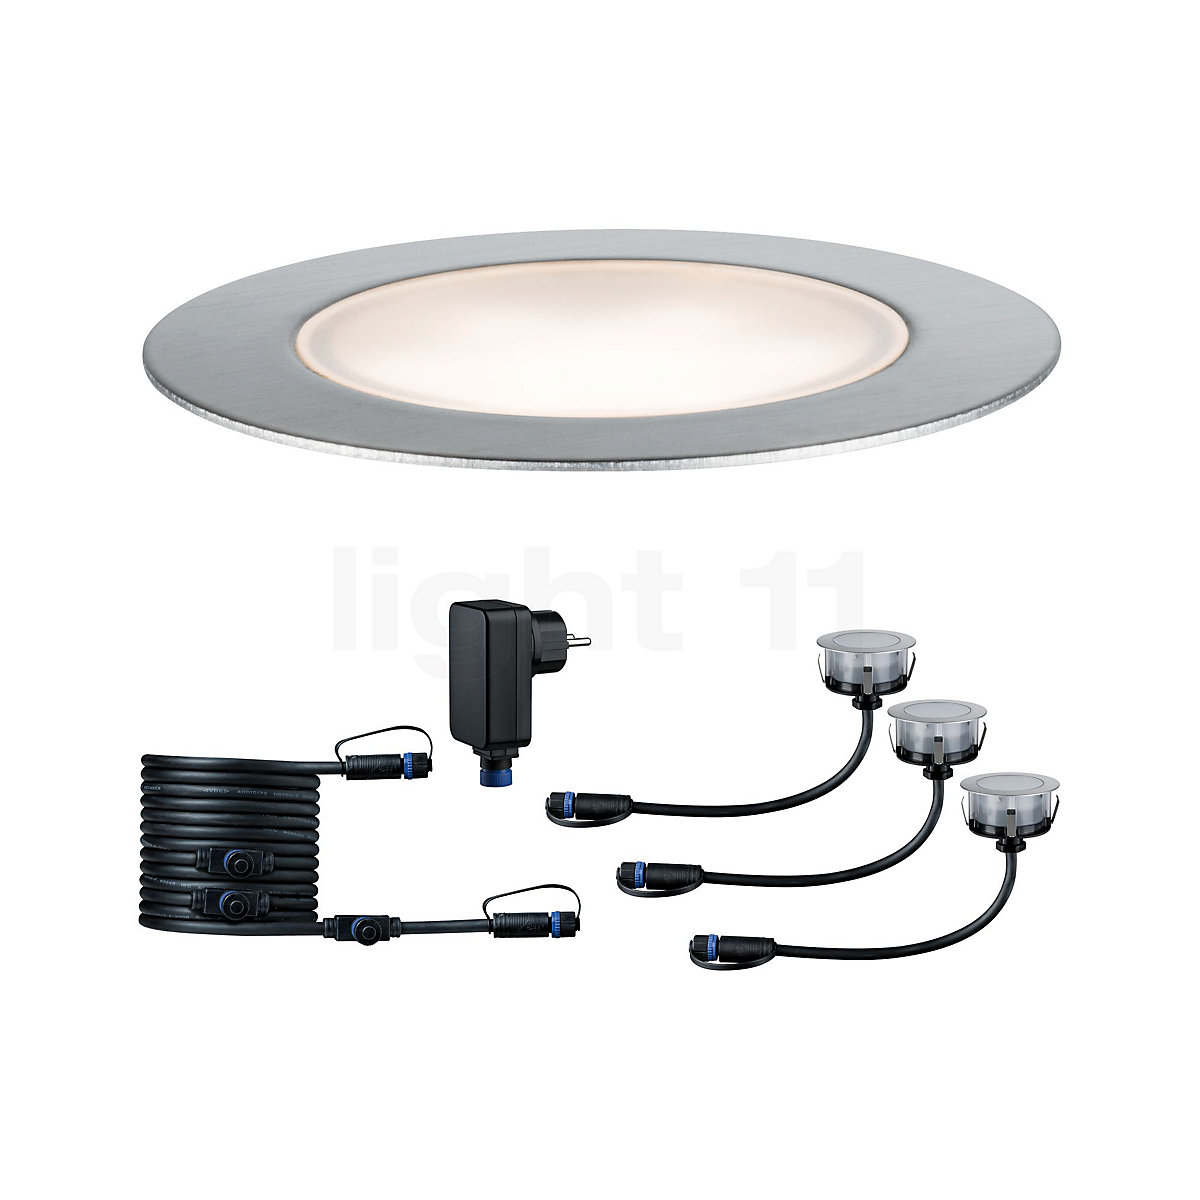 Buy Paulmann Plug & Shine Floor recessed Floor Light LED at